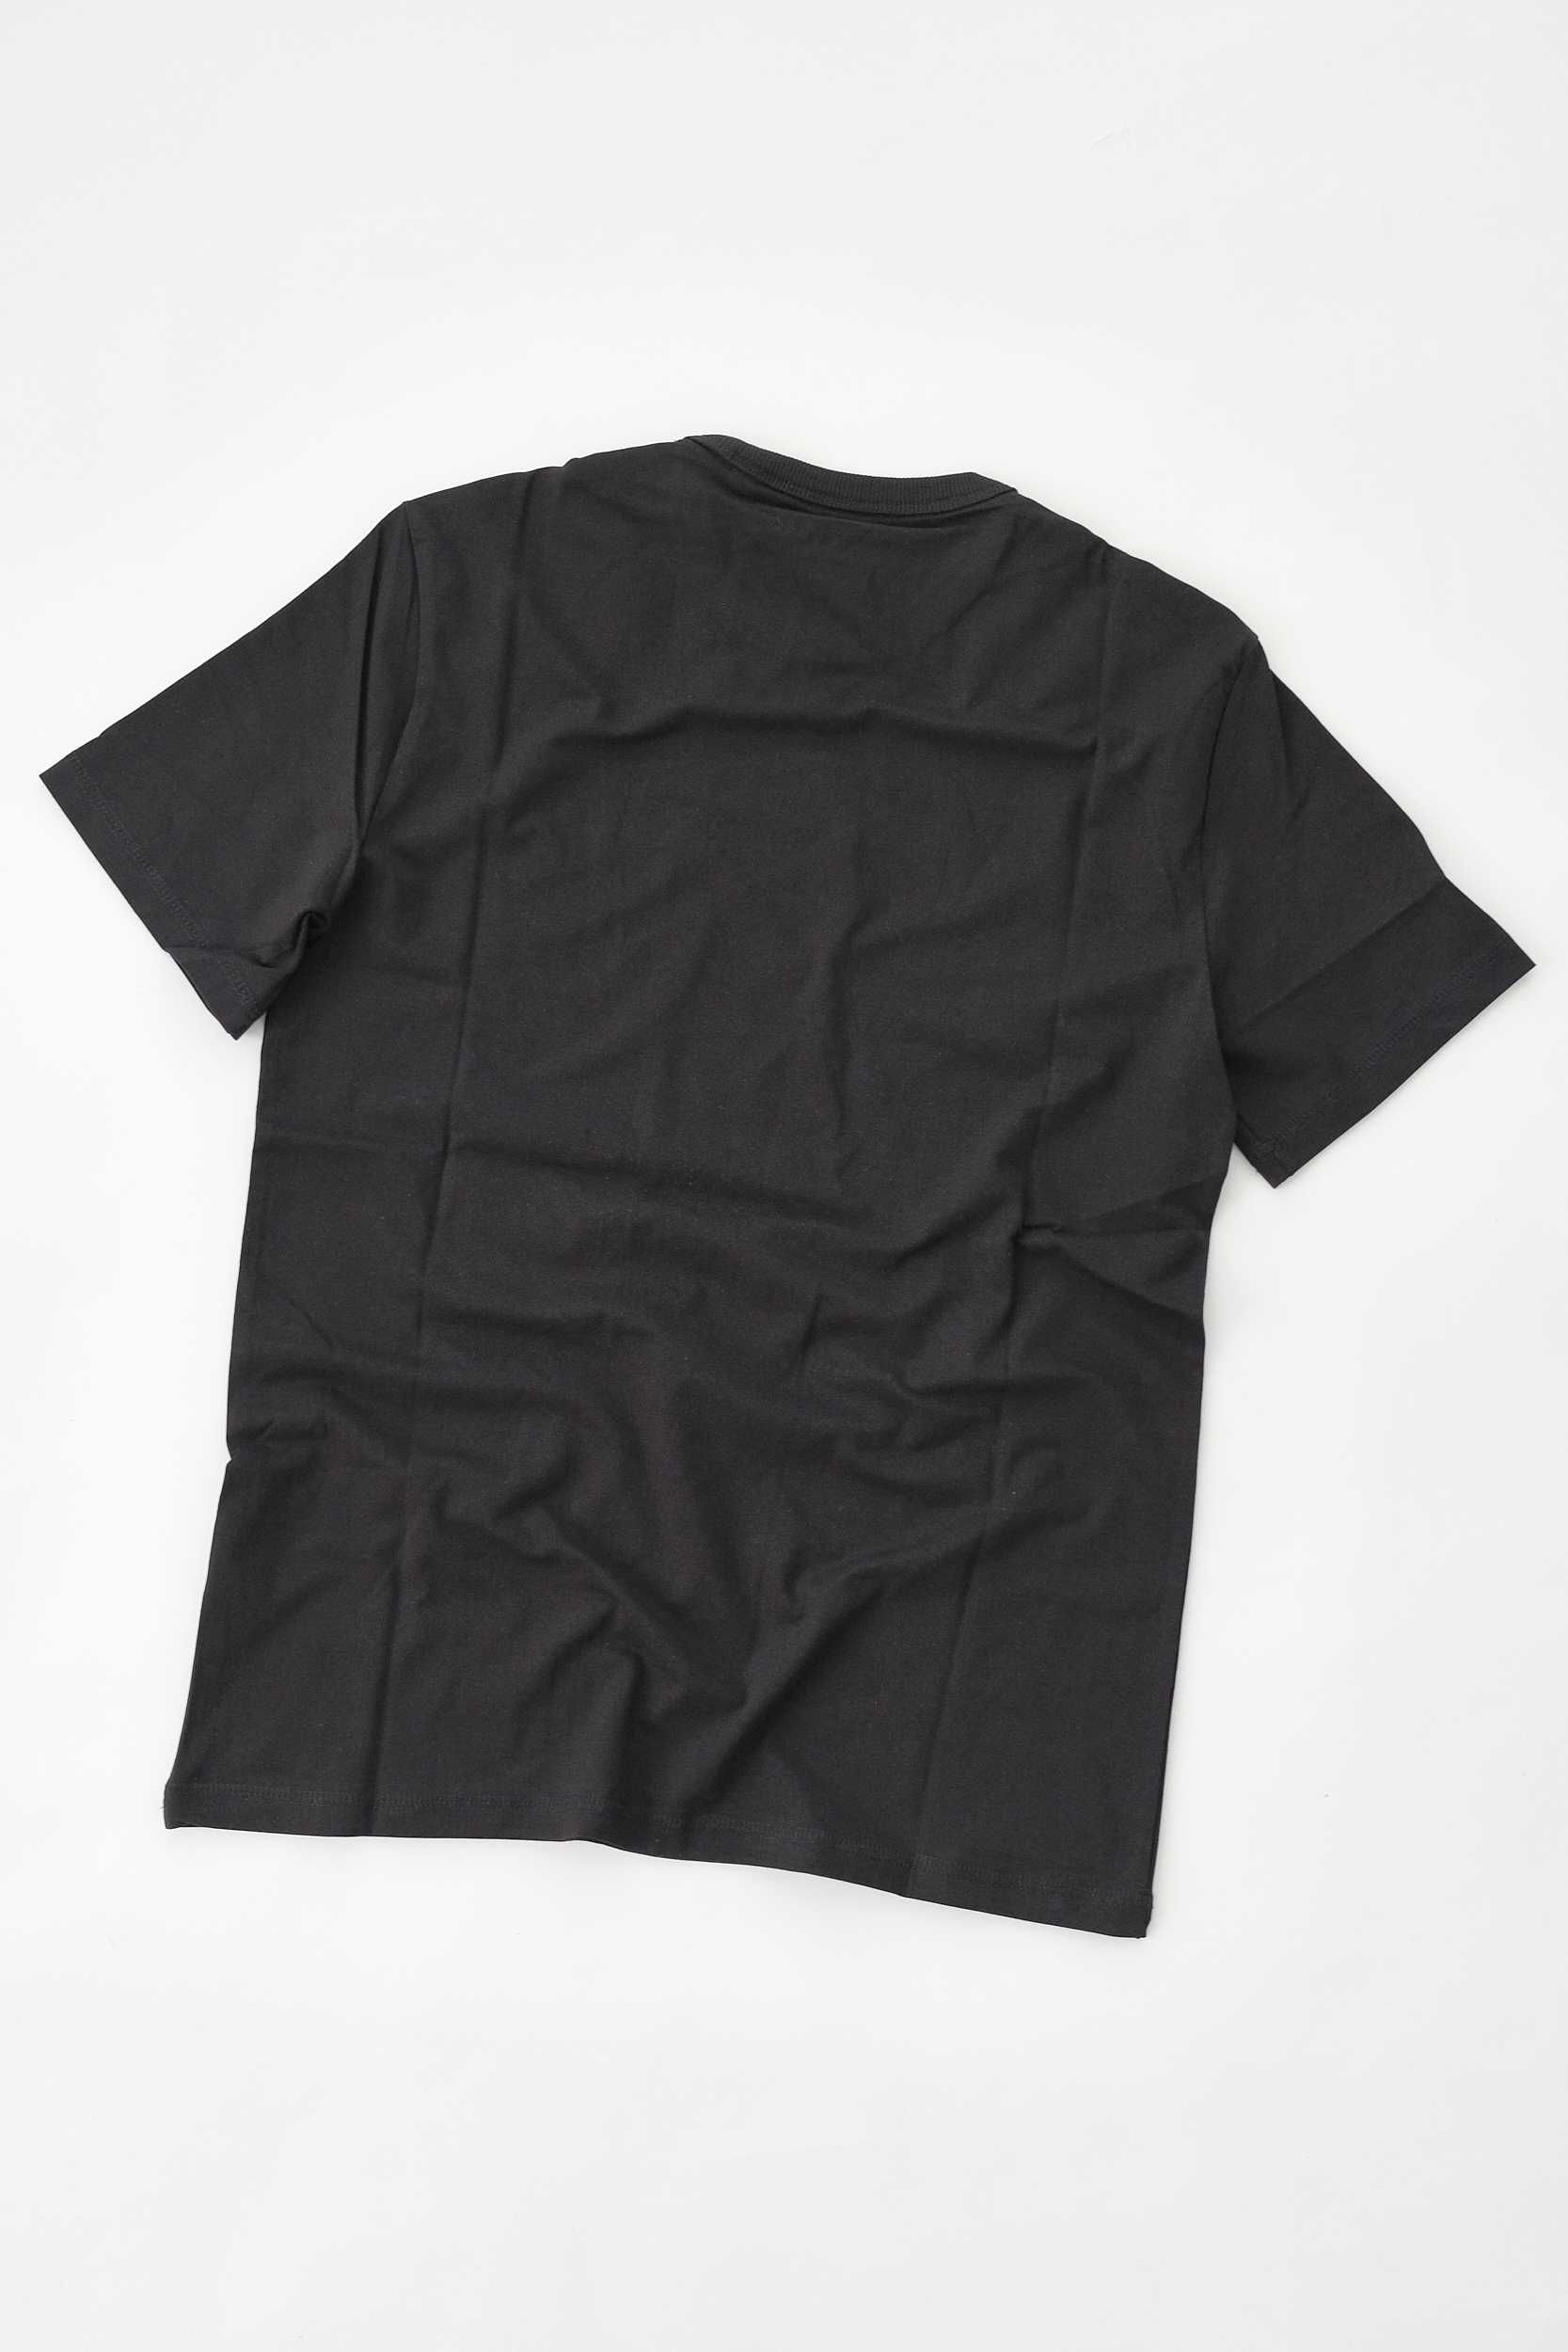 ПРОМО GUESS М  размери-Оригинална черна мъжка тениска с палми